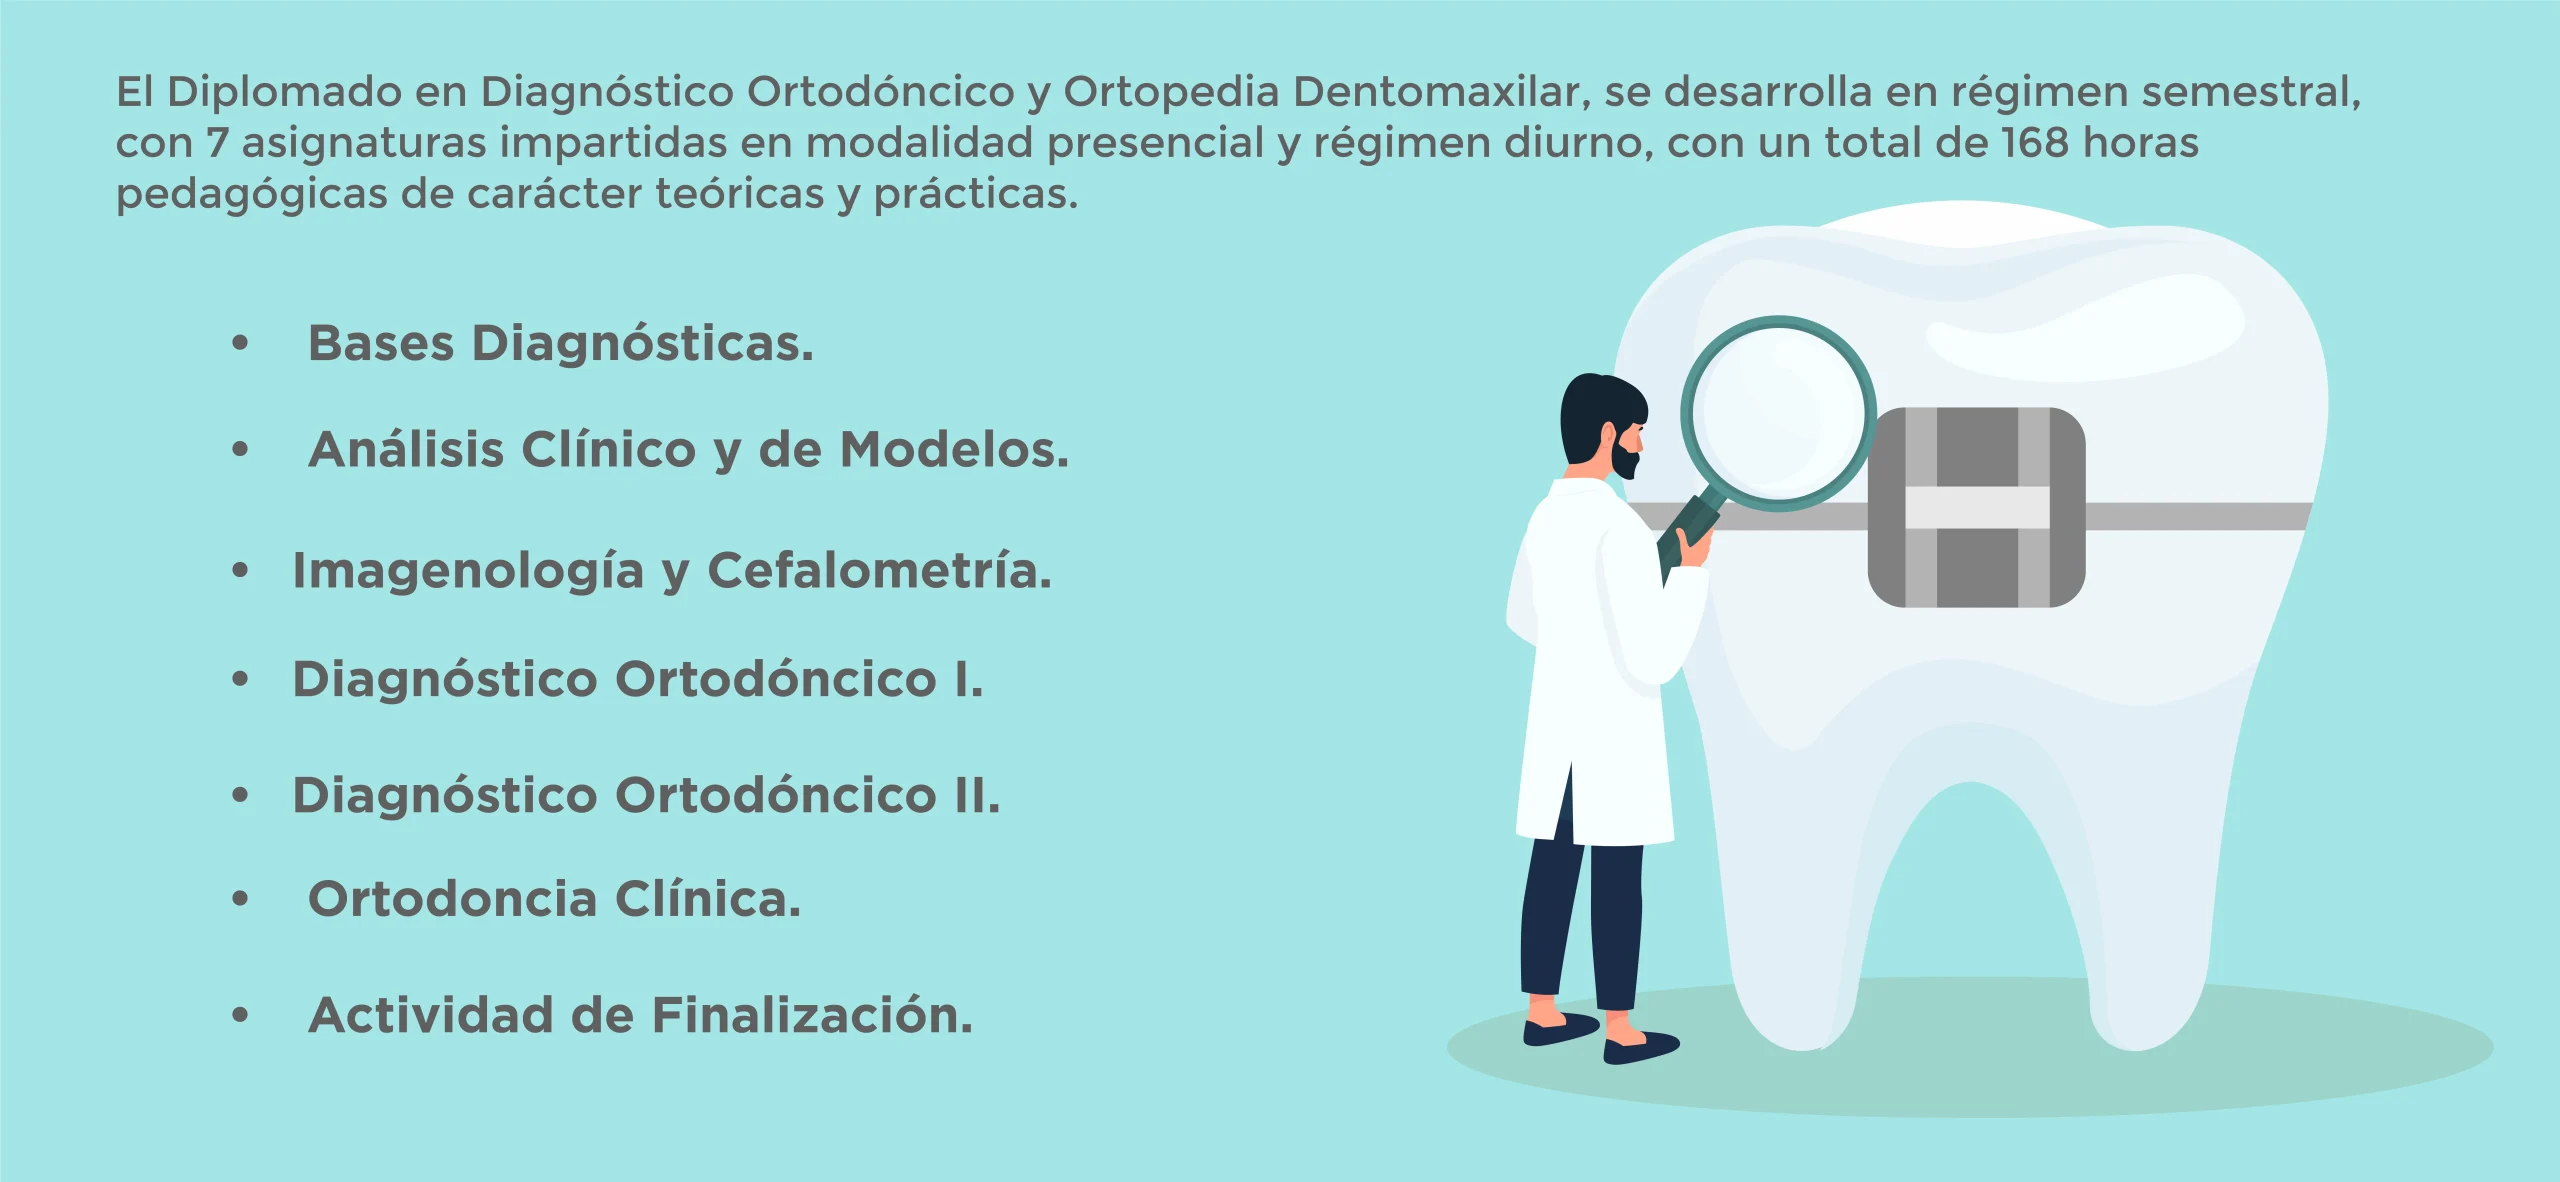 Plan de Estudios Odontología​ Diplomado en Diagnóstico Ortodóncico y Ortopedia Dentomaxilar